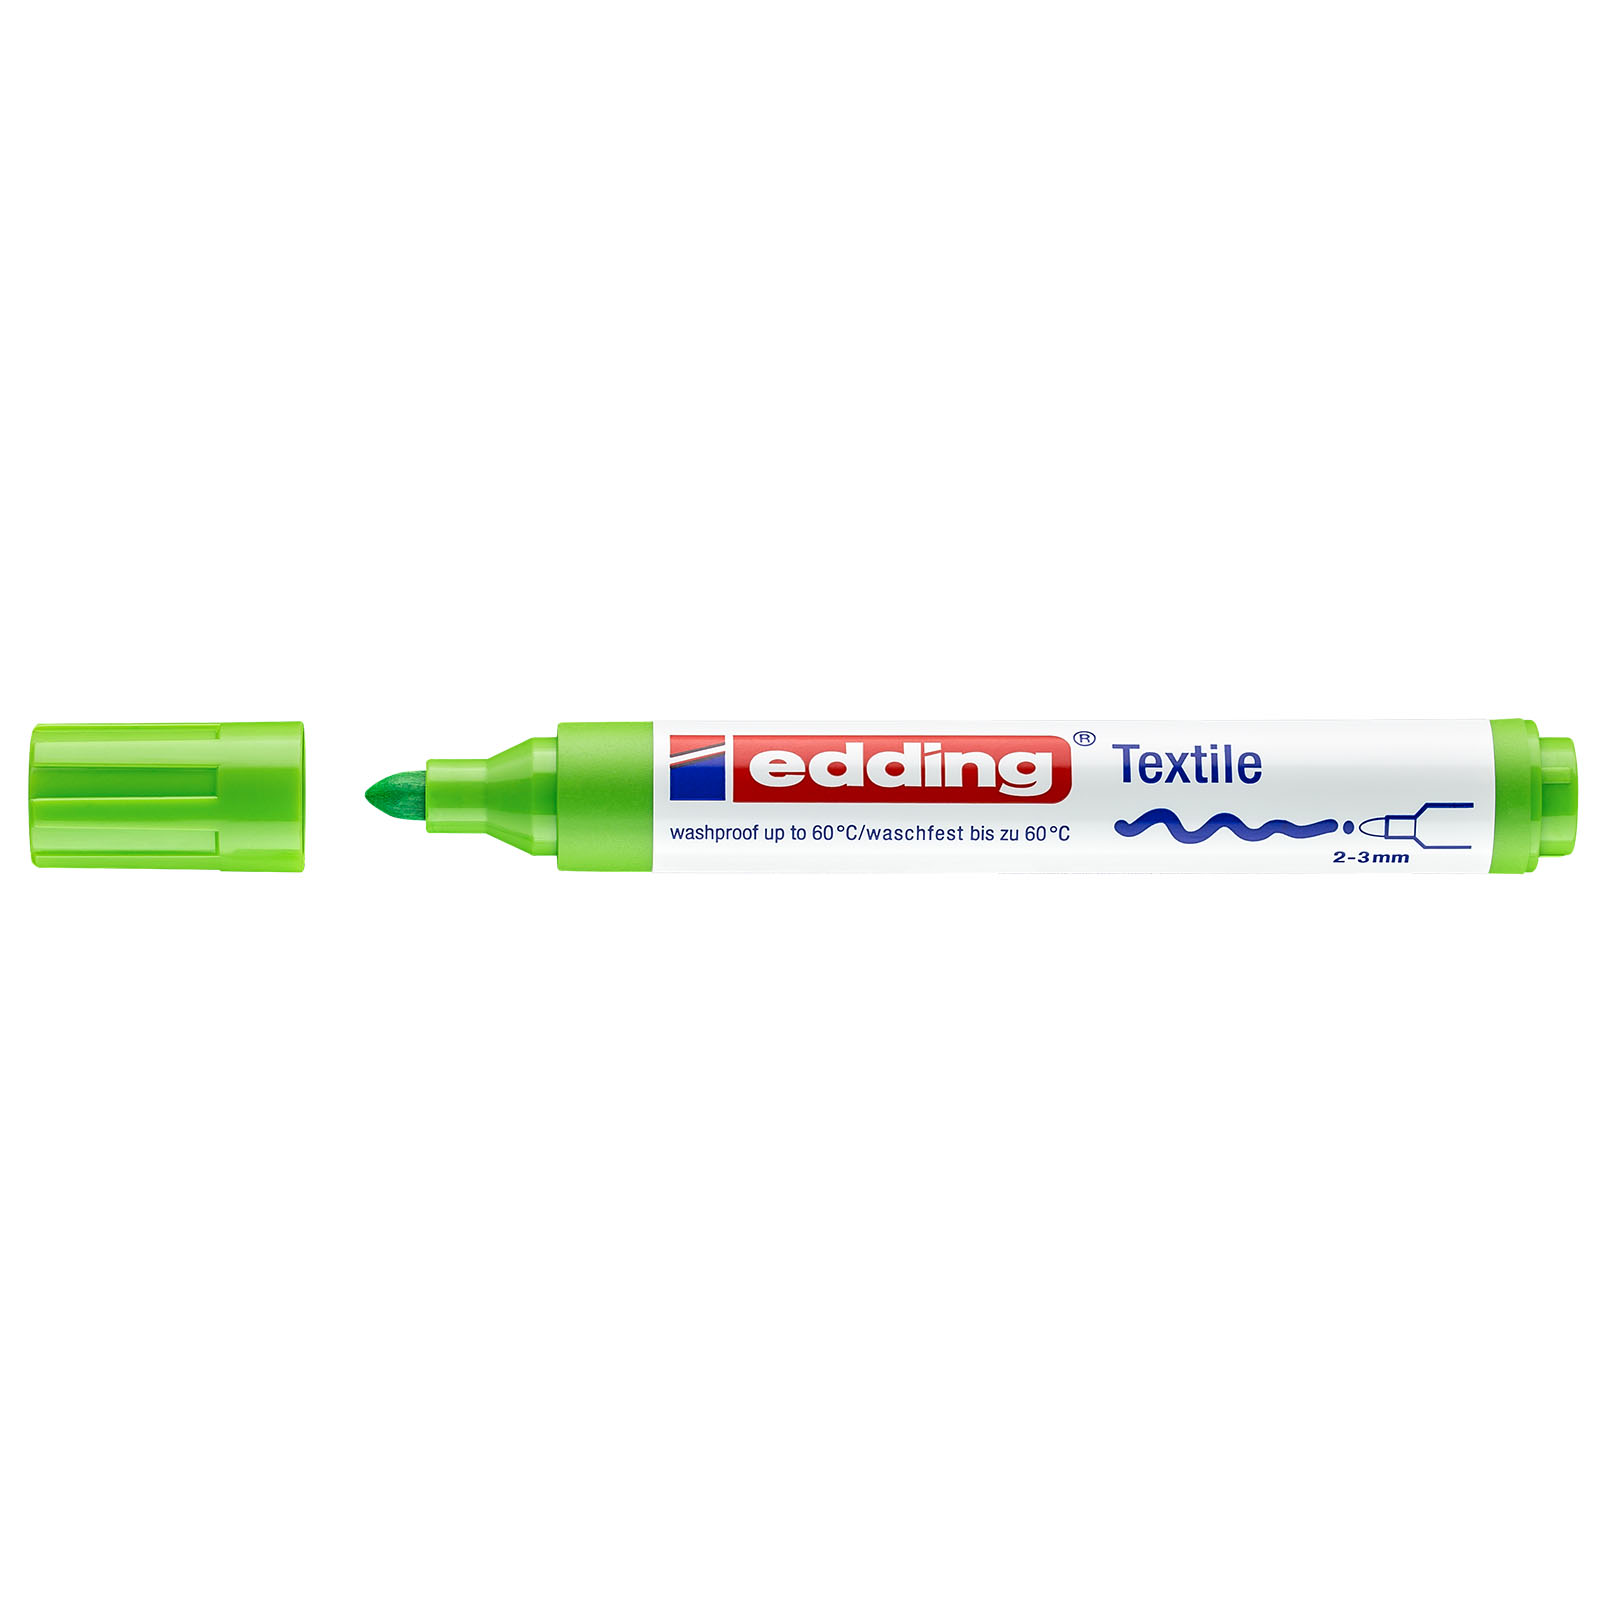 Edding 4500 • Textile pen 2-3mm Light green